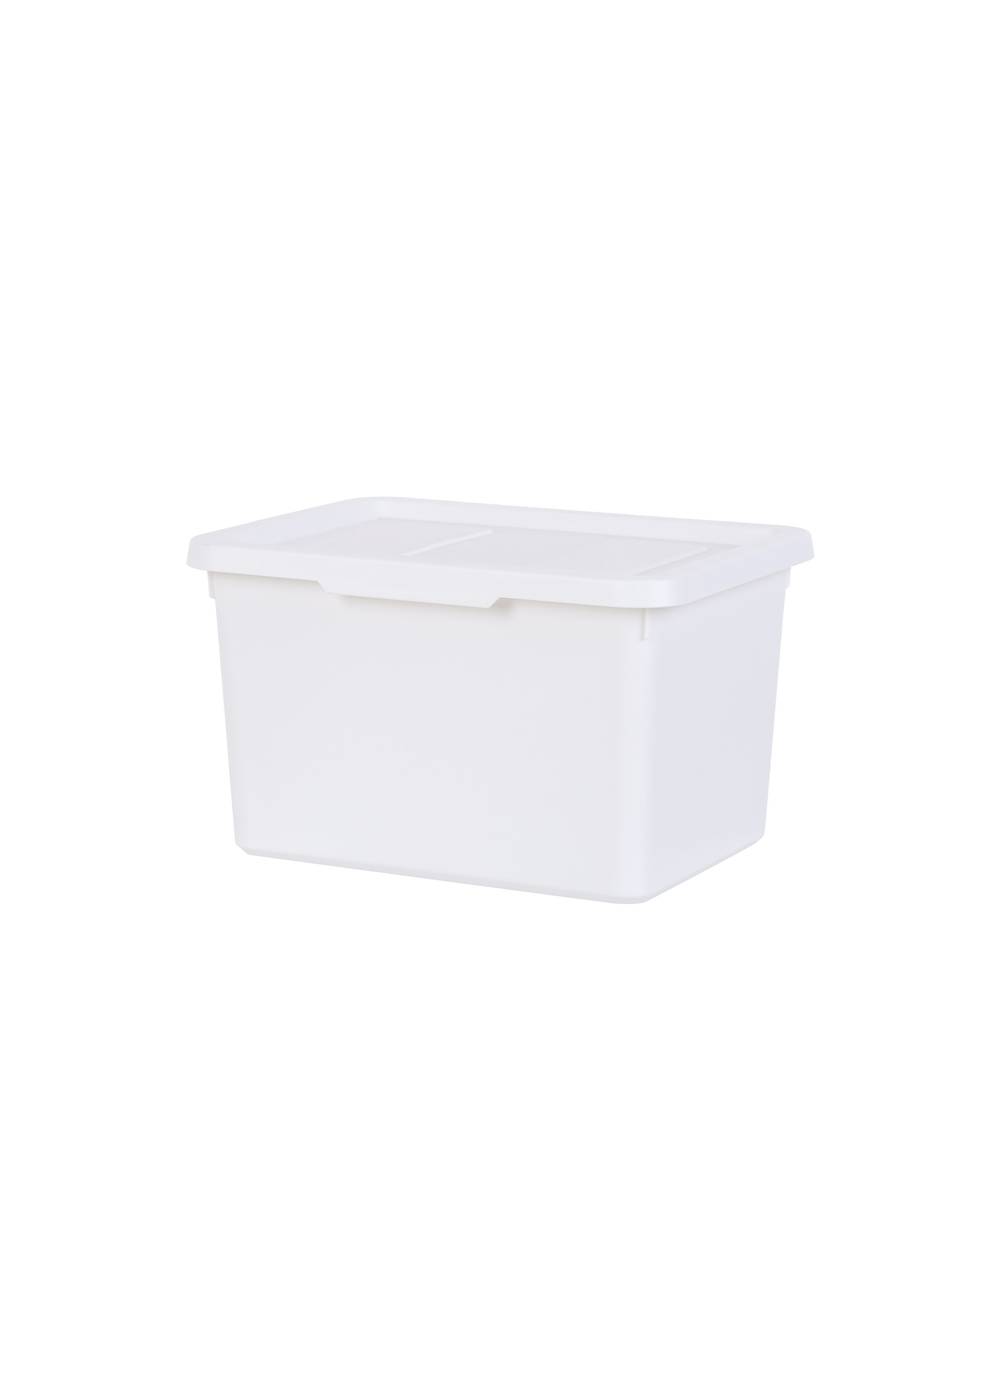 Miniso caja de almacenamiento blanca ch (1 pieza)